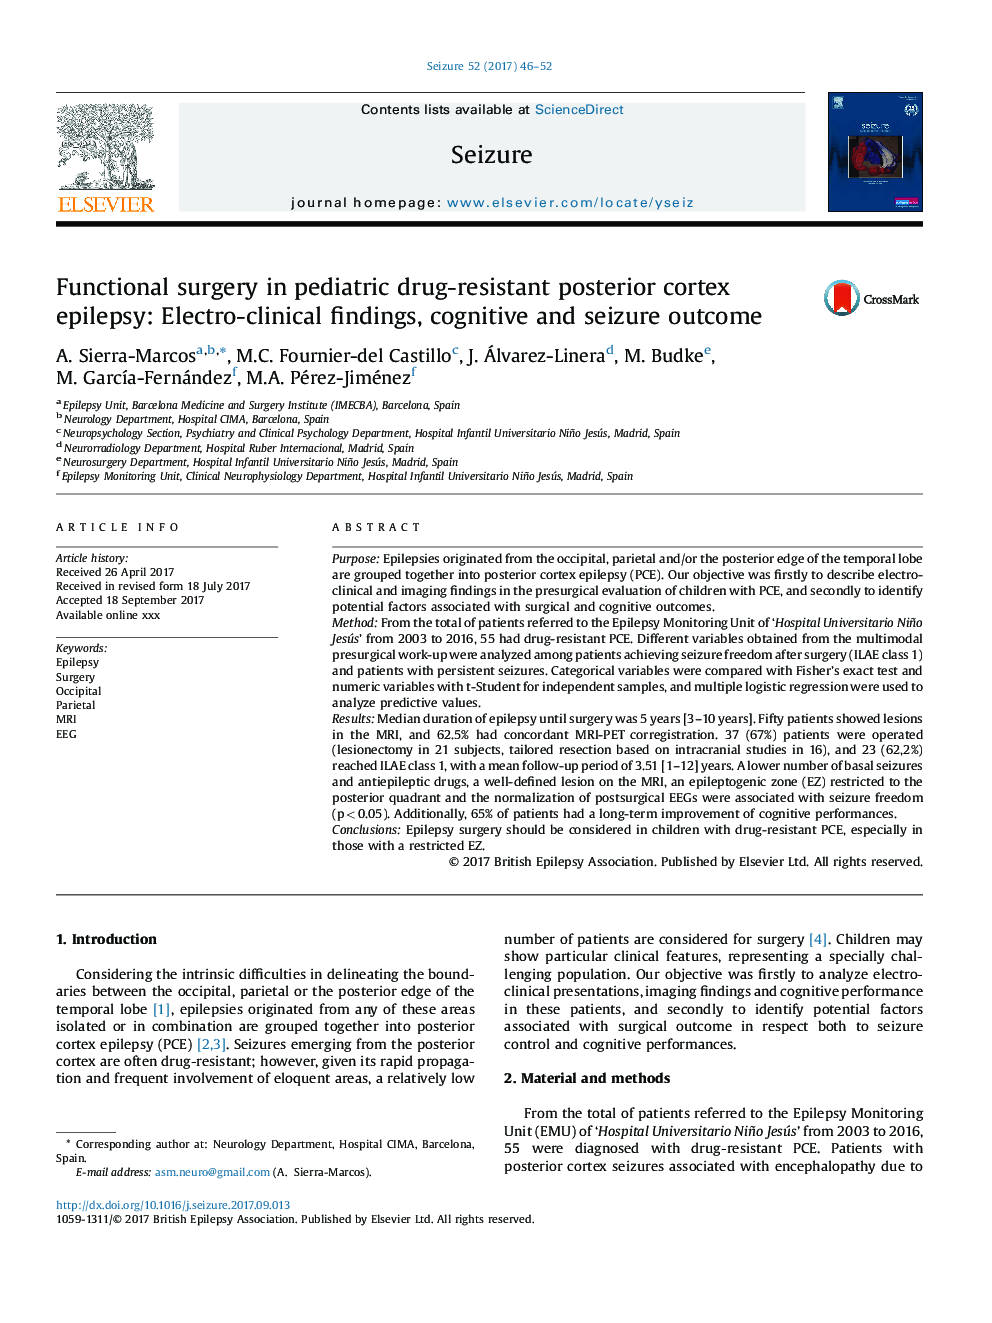 جراحی کاربردی در صرع کورتکس خفیف داروئی کودکان: یافته های الکترو بالینی، نتیجه شناختی و تشنج 